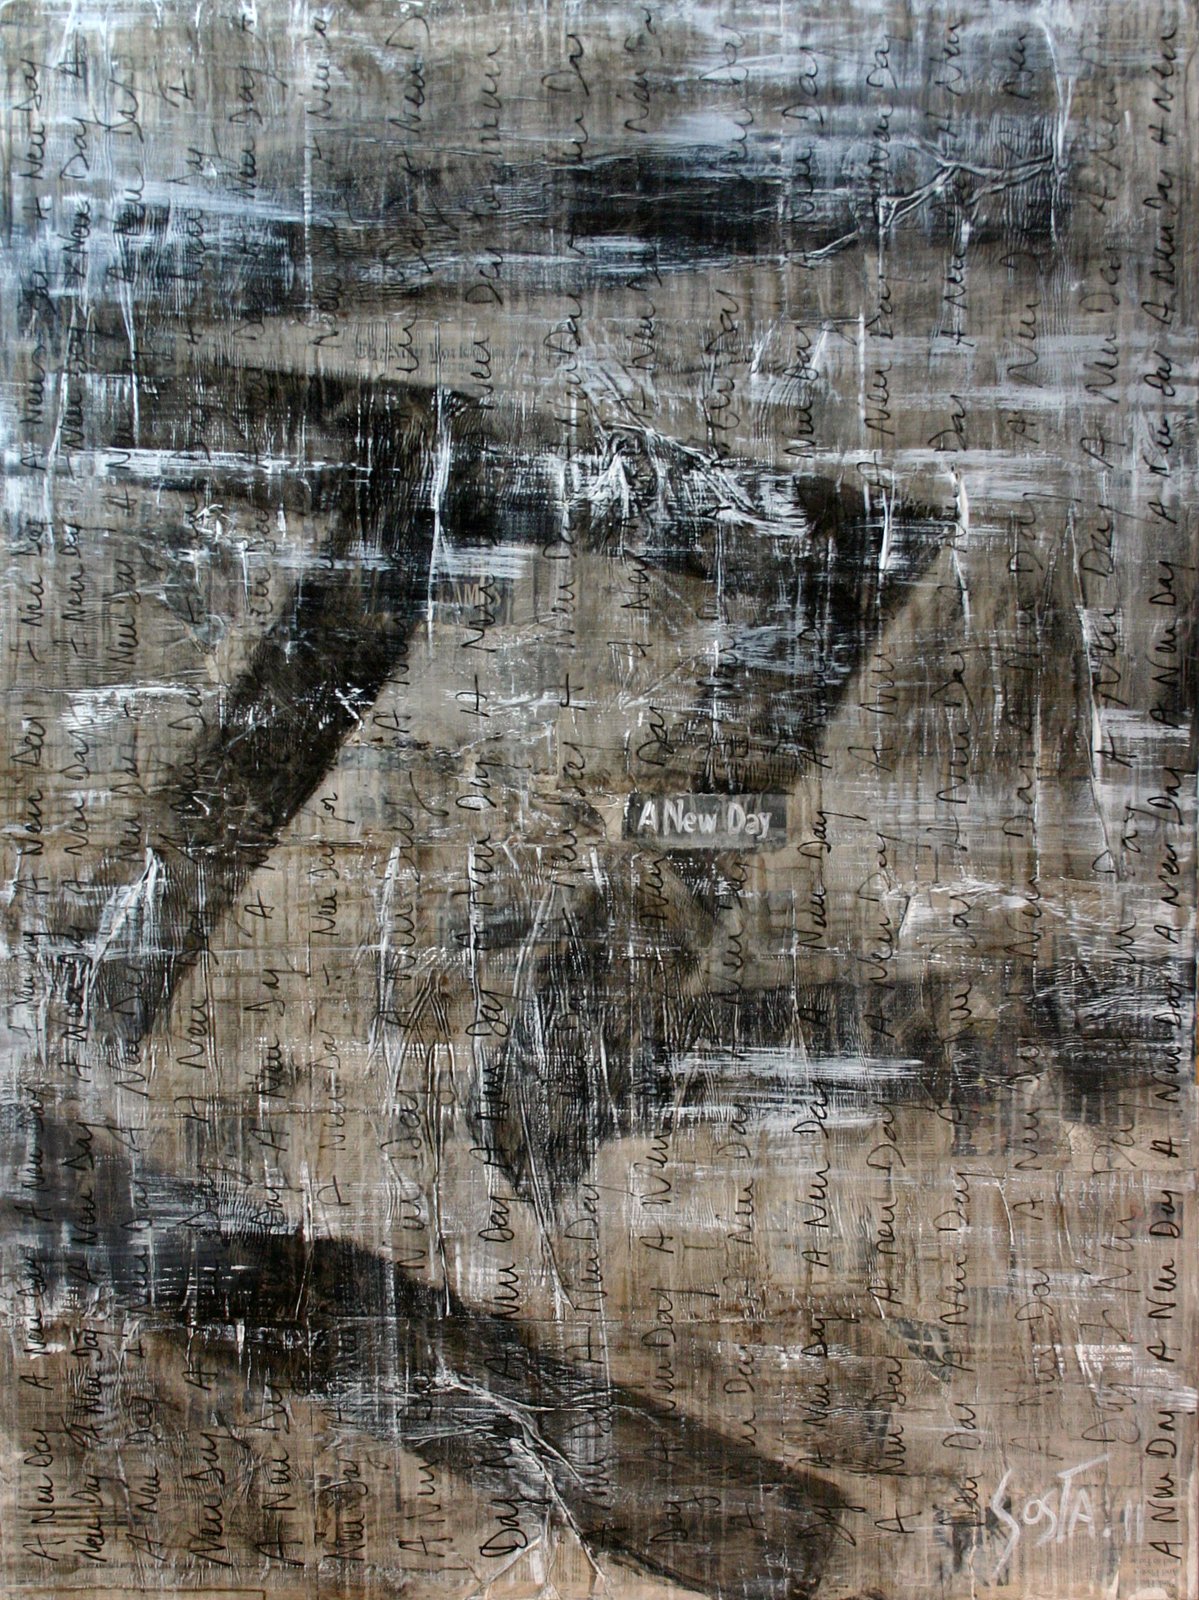 collage journaux, gris,noir, grand format Tableau Contemporain, A new day. Sophie Costa, artiste peintre.